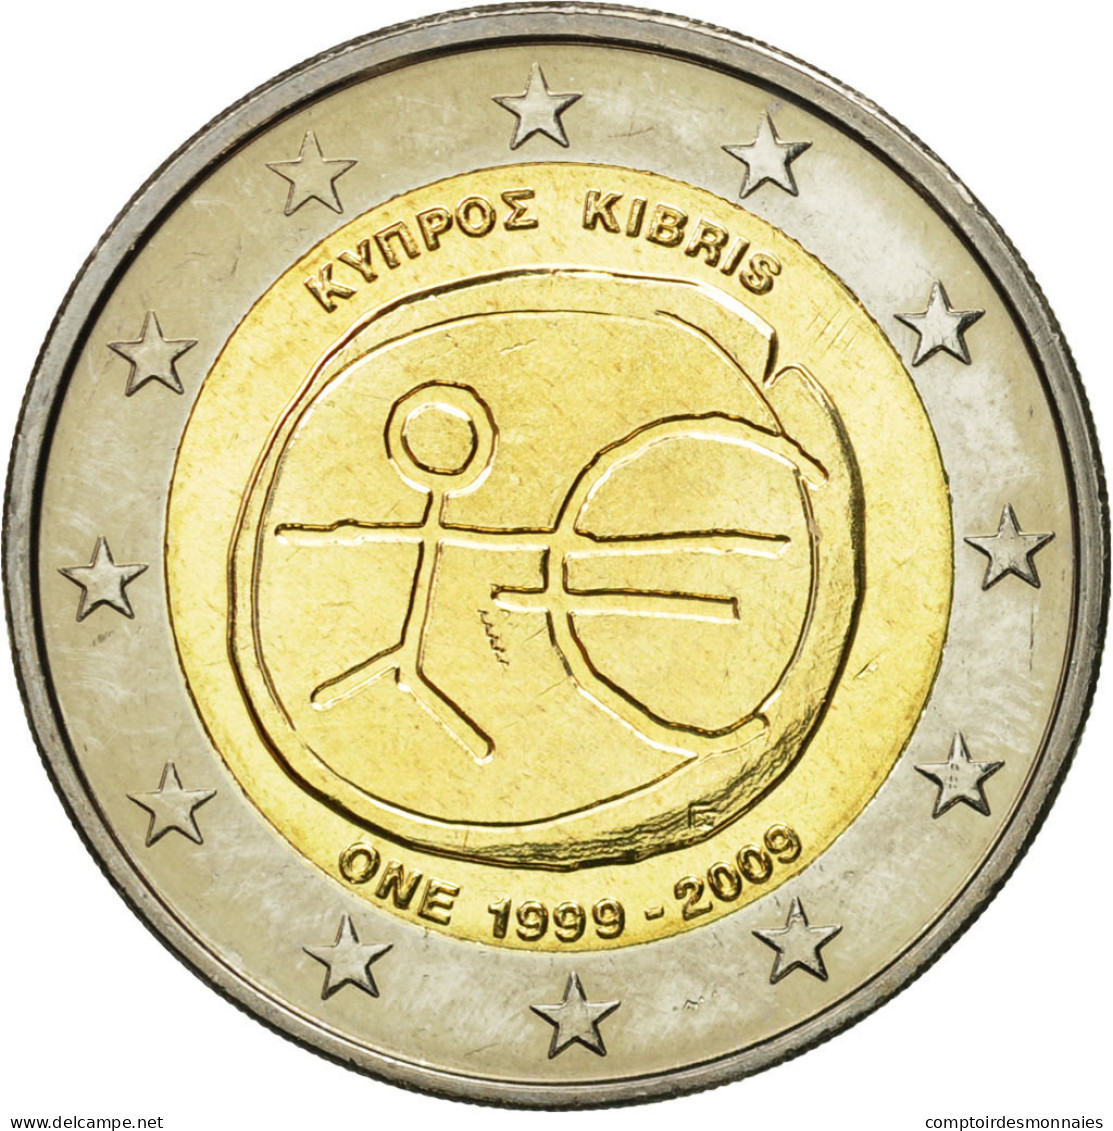 Chypre, 2 Euro, 10 Ans De L'Euro, 2009, SPL, Bi-Metallic, KM:89 - Chypre